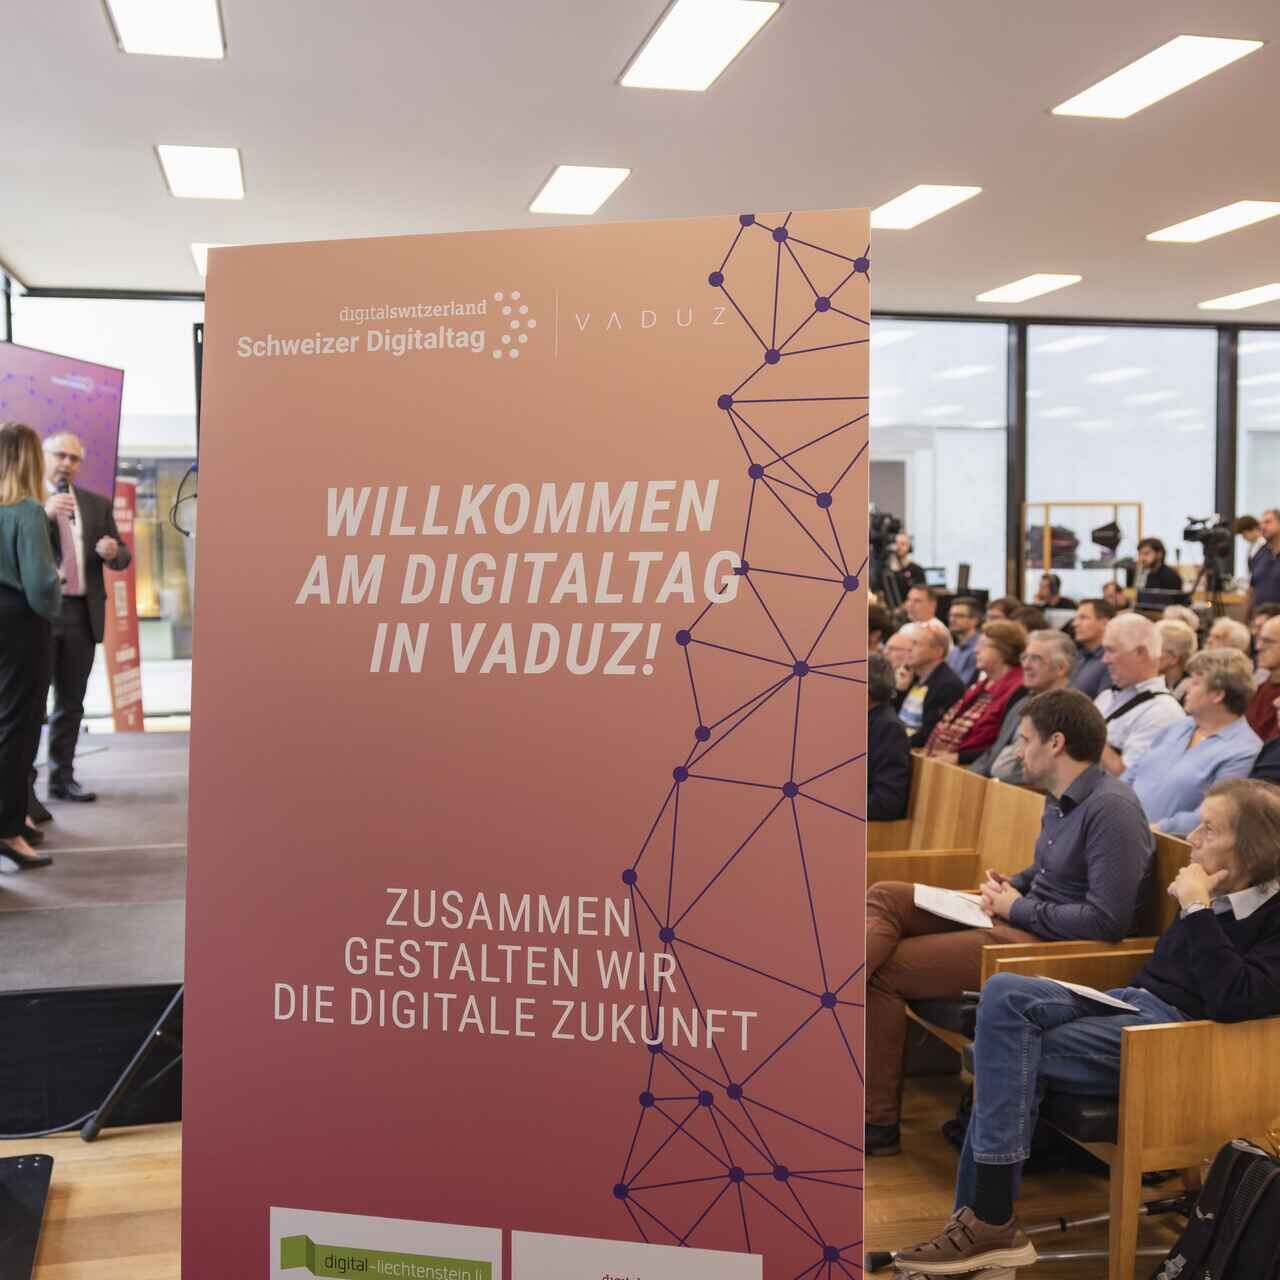 El "Digitaltag Vaduz" va ser rebut pel Kunstmuseum de la capital del Principat de Liechtenstein el dissabte 15 d'octubre de 2022